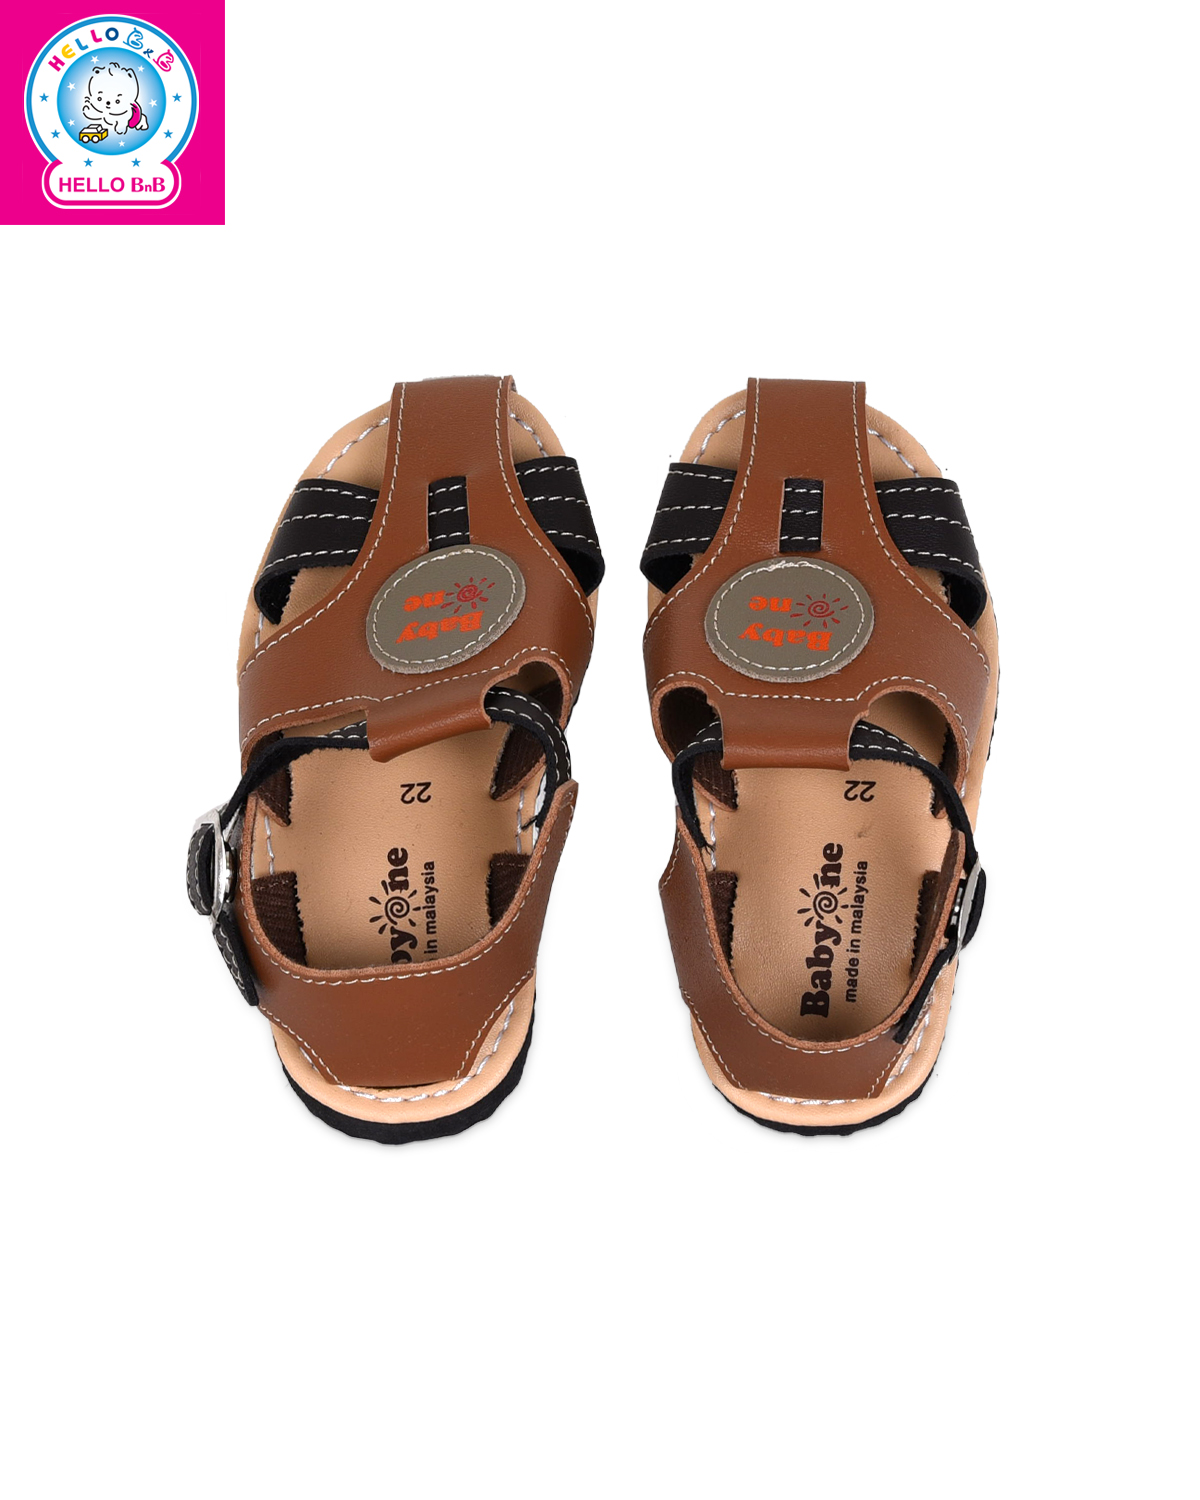 Giày sandal BabyOne 0806 size 24 Brown